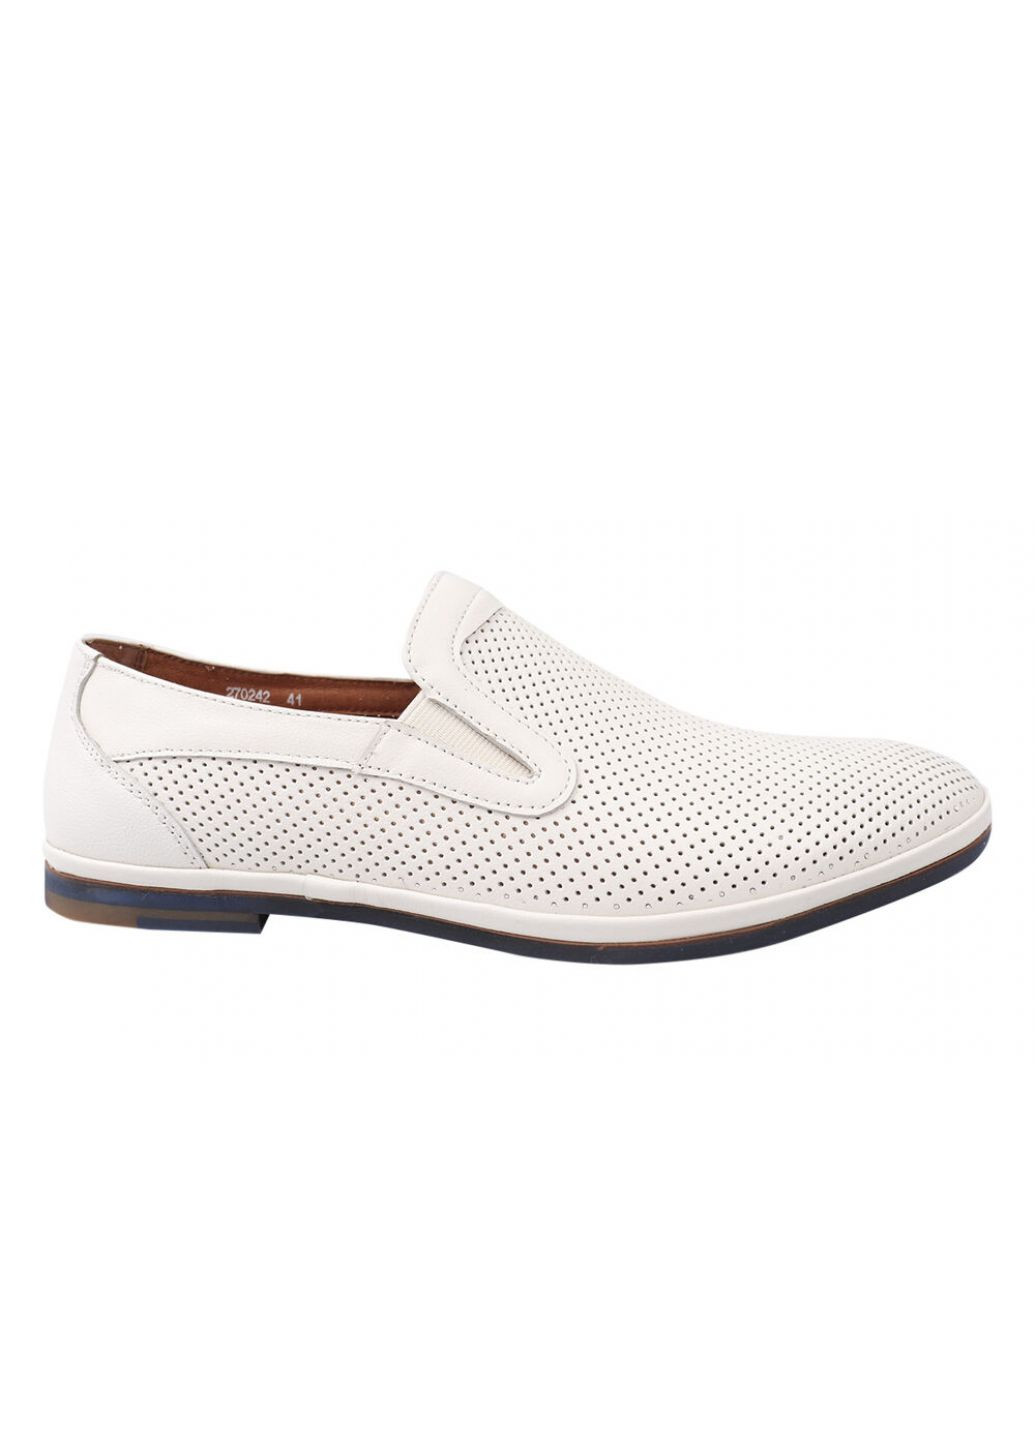 Белые туфли мужские из натуральной кожи, на низком ходу, цвет белый, Emillio Landini